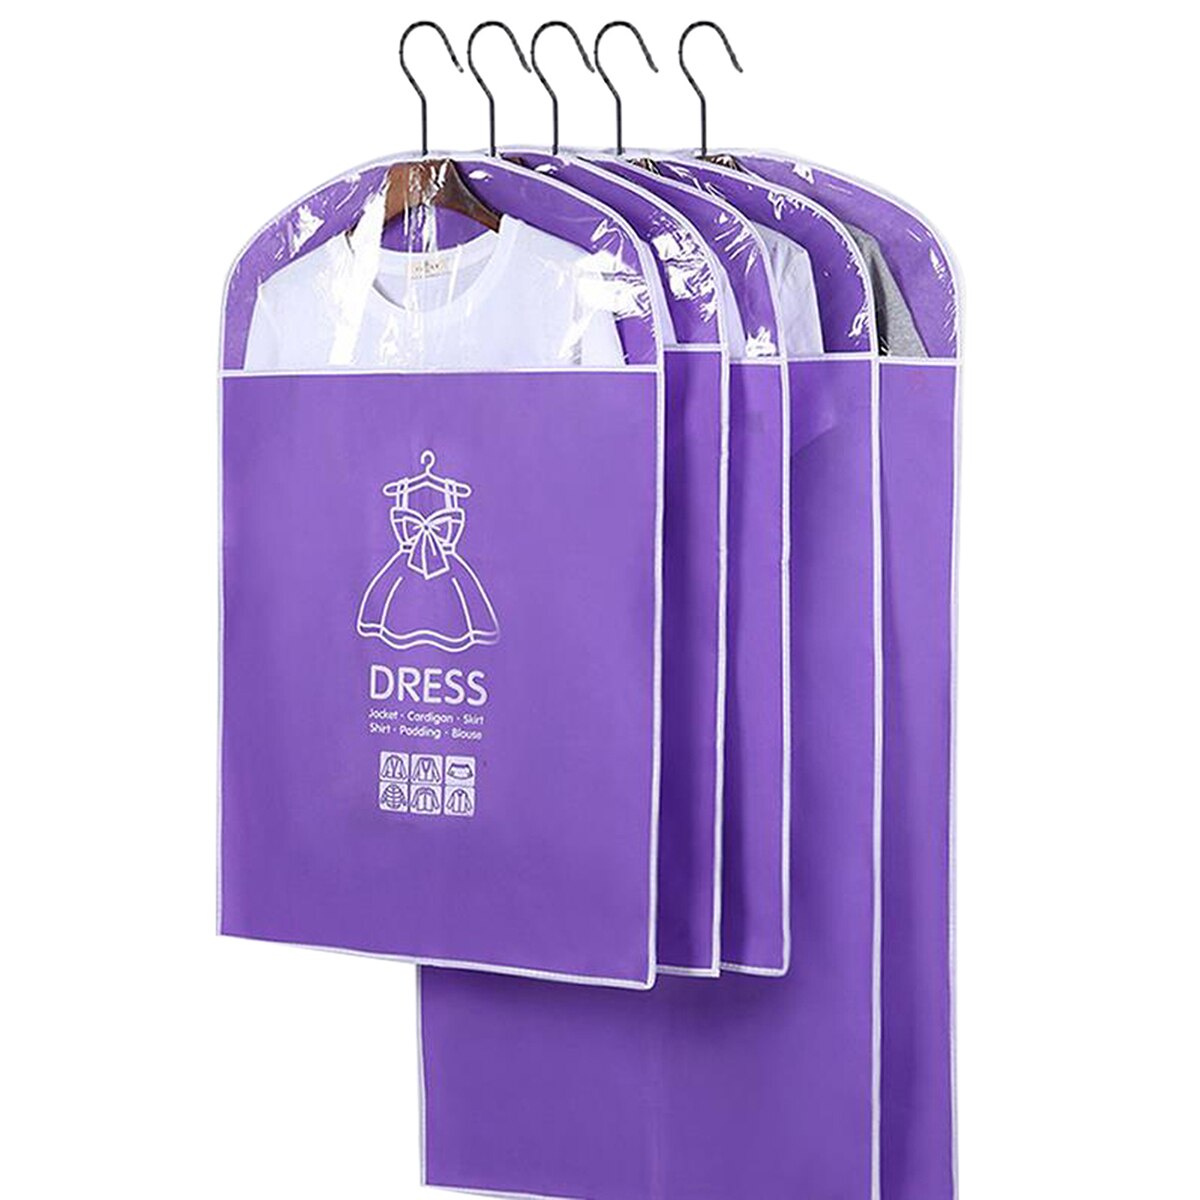 Tøjhængende støvdæksel beklædningsgenstand støvtæt klædedæksposer gennemsigtig garderobesække opbevaringspose støvdæksel tøjbeskytter: Himmelblå / 60 x 90